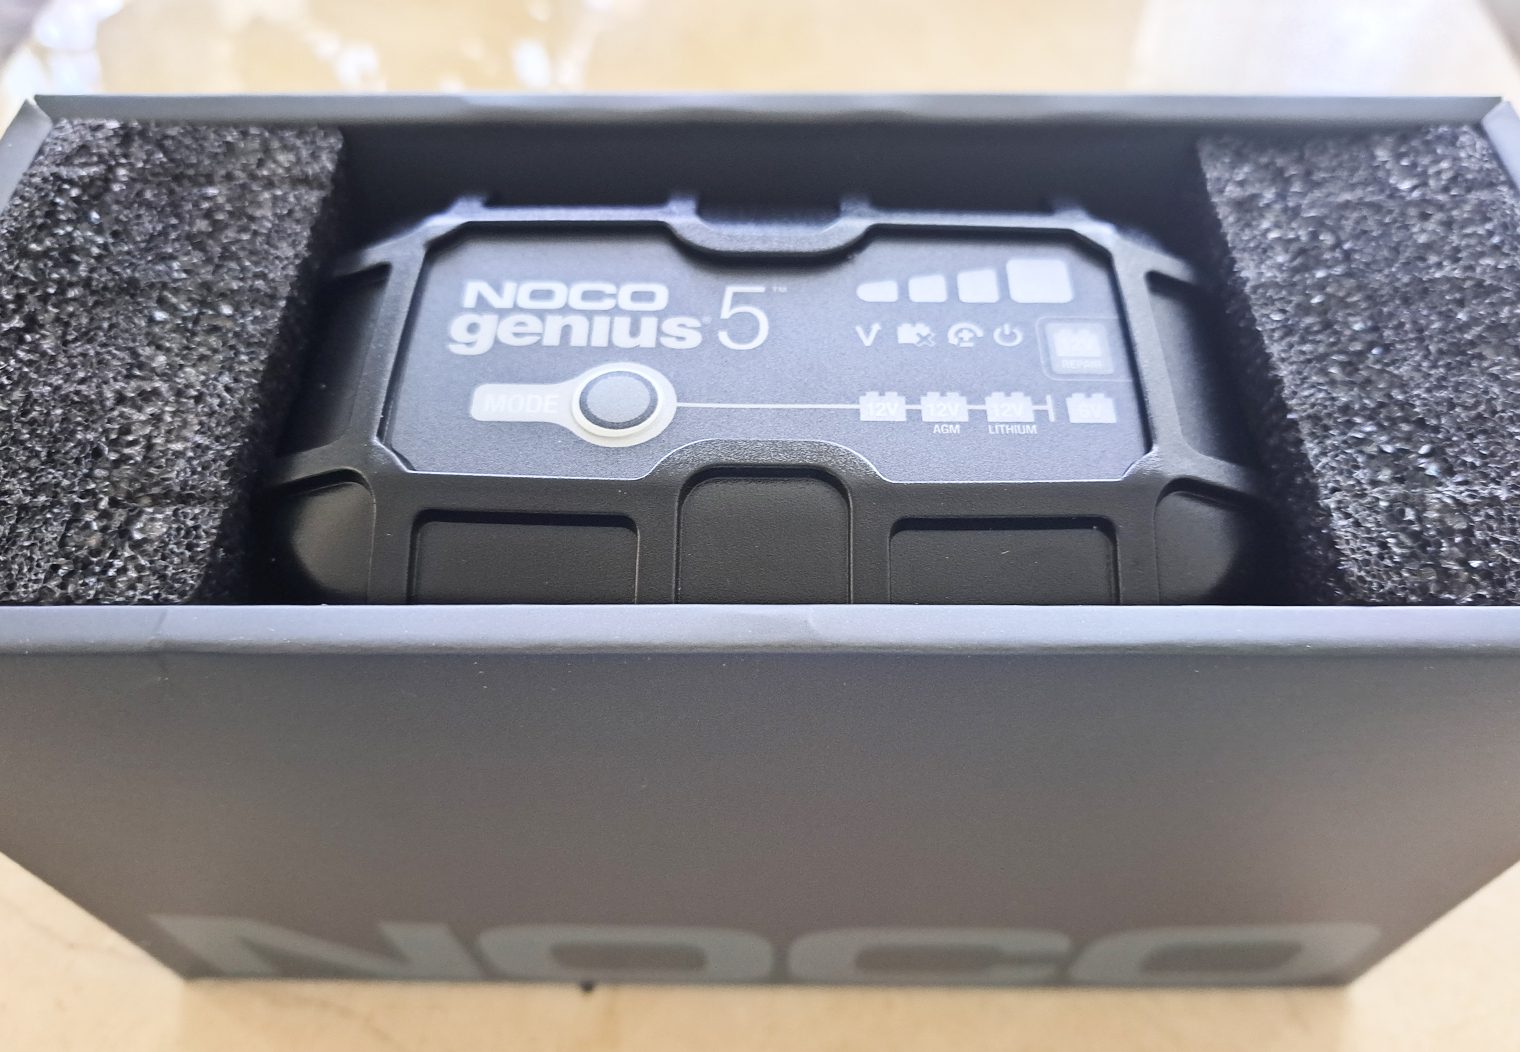 NOCO Genius5 box opened